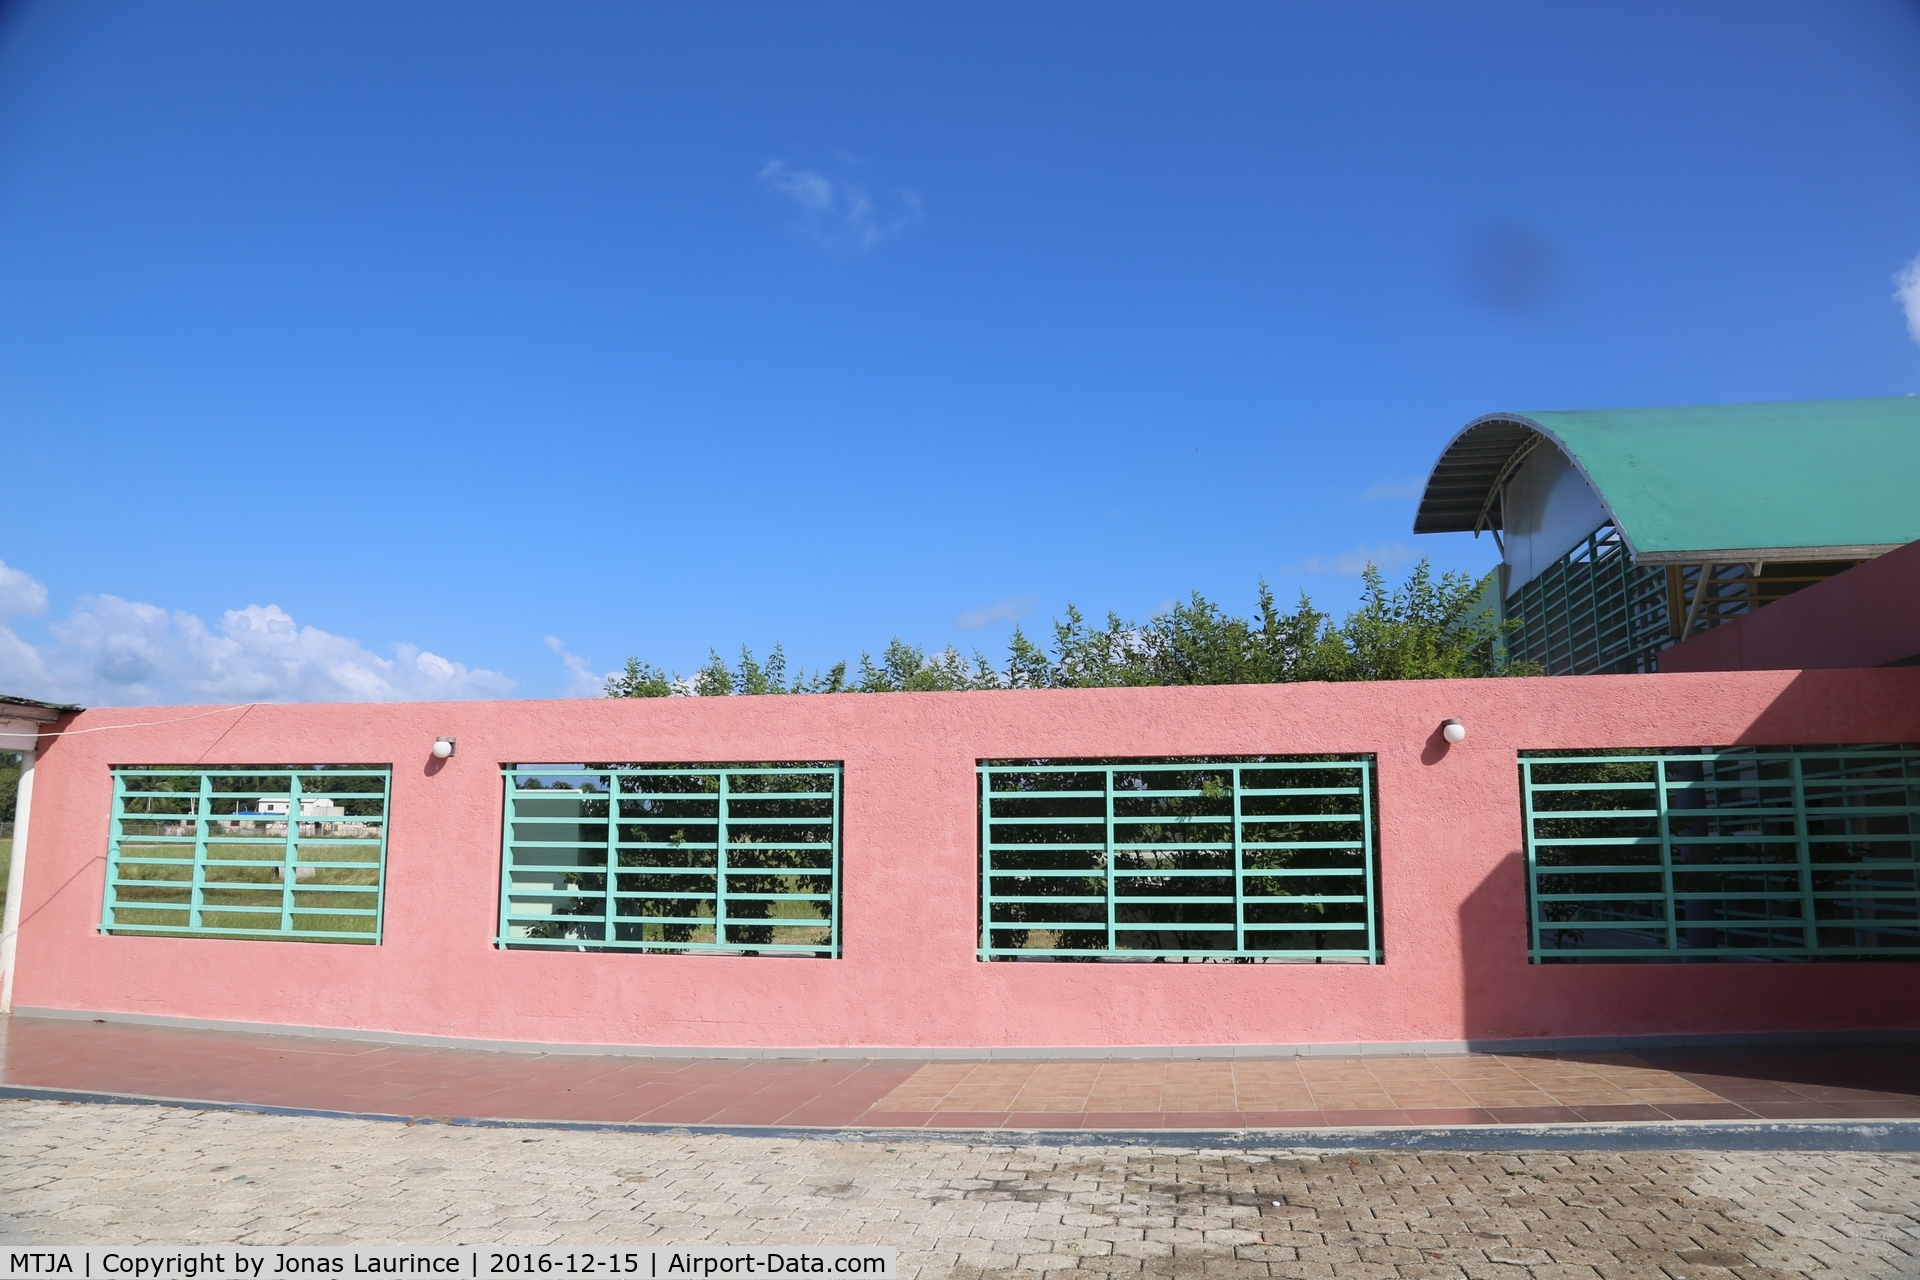 Jacmel Airport, Jacmel Haiti (MTJA) - Jacmel Airport Main Building